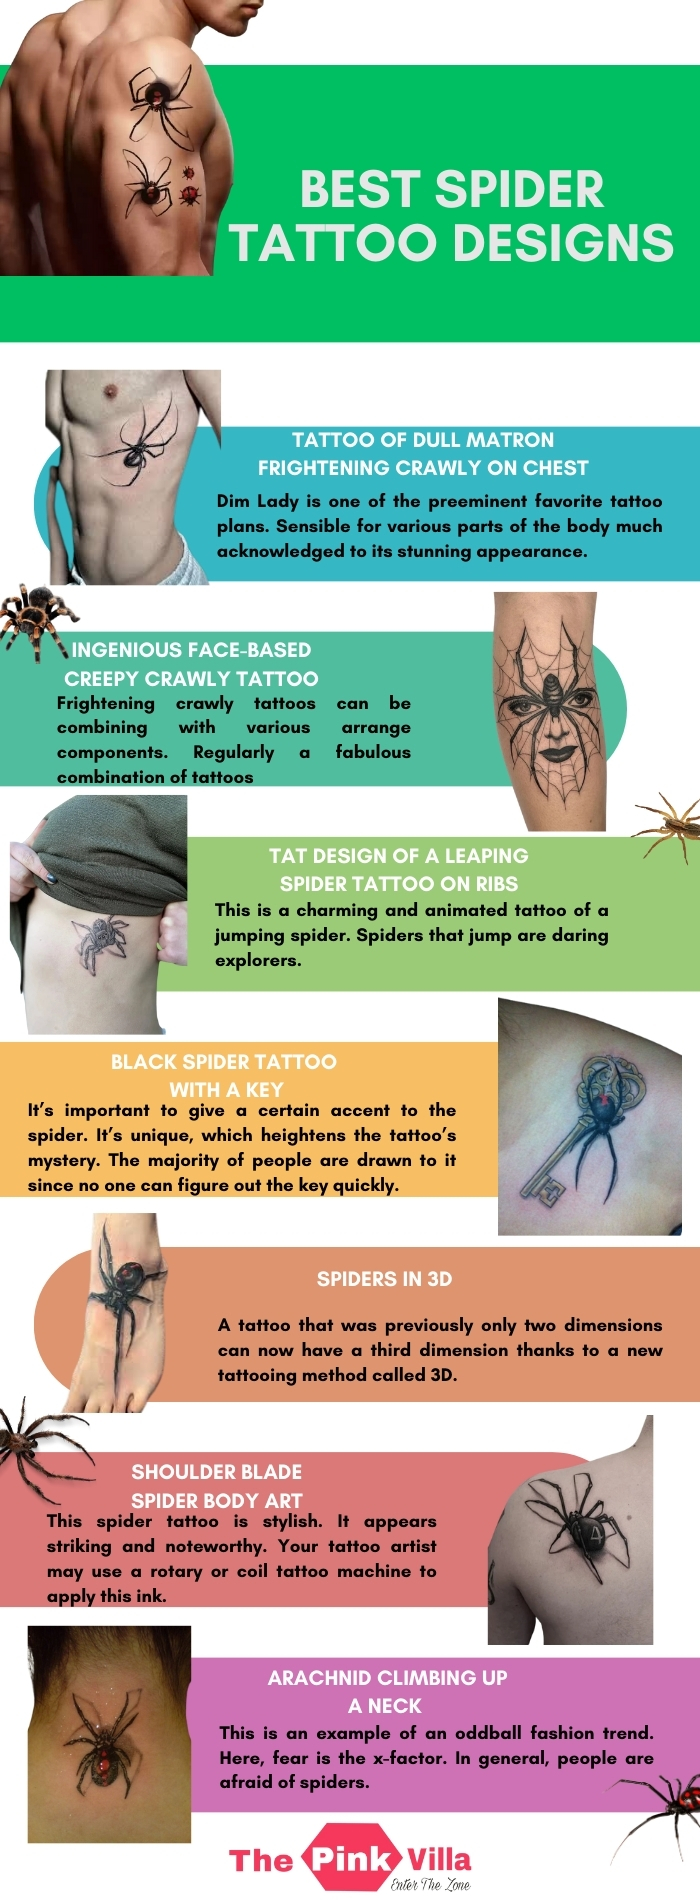 Best Spider Tattoo Designs 